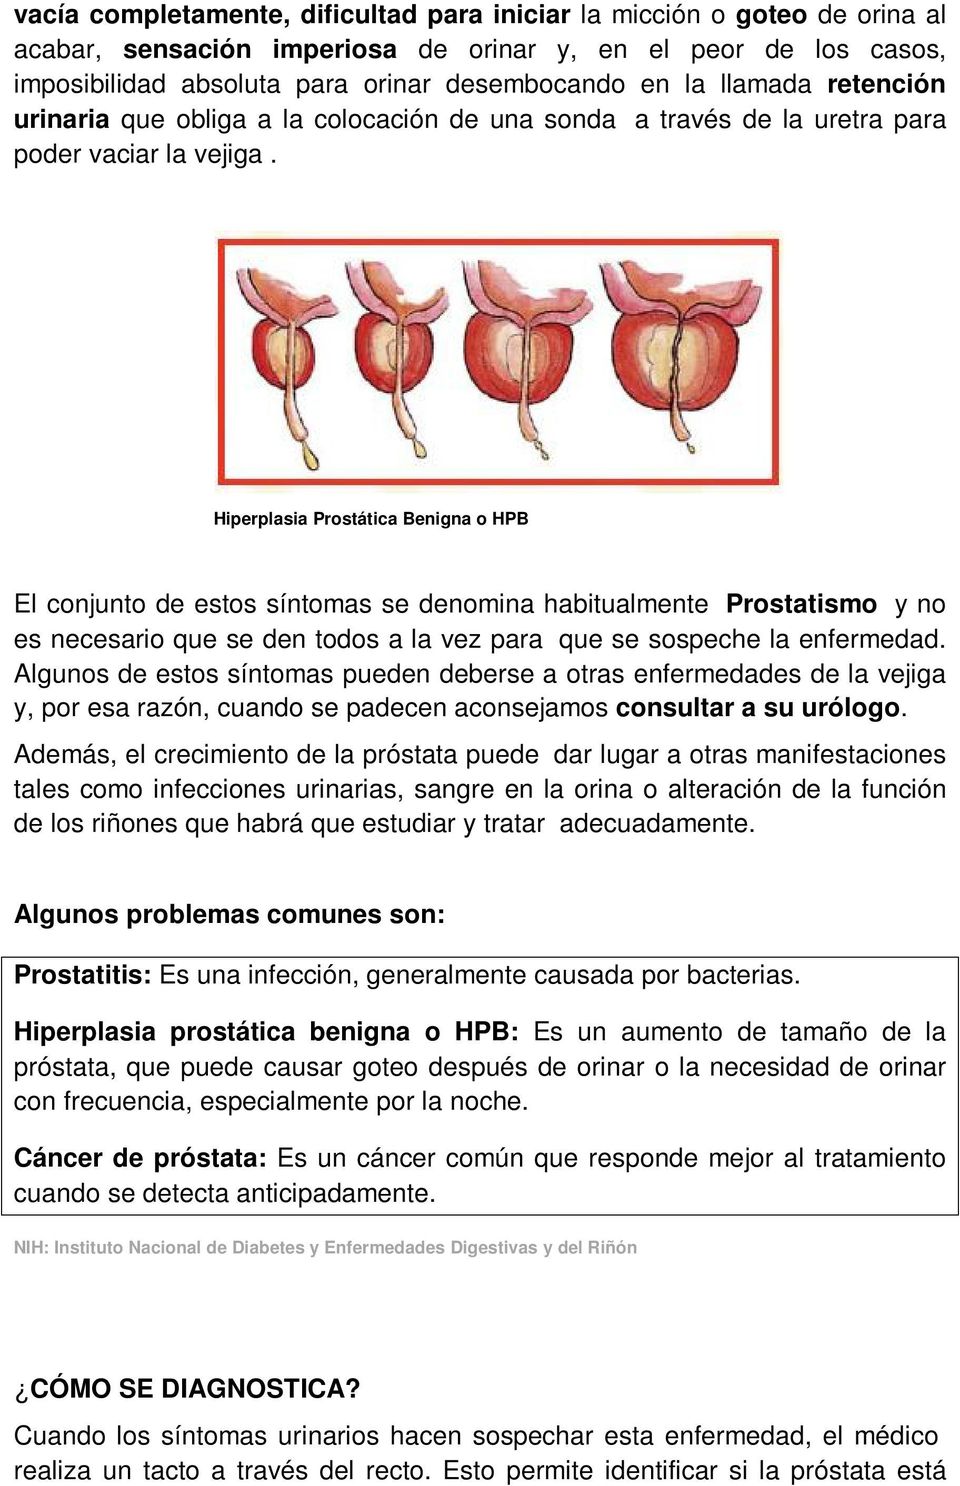 Hiperplasia Prostática Benigna o HPB El conjunto de estos síntomas se denomina habitualmente Prostatismo y no es necesario que se den todos a la vez para que se sospeche la enfermedad.